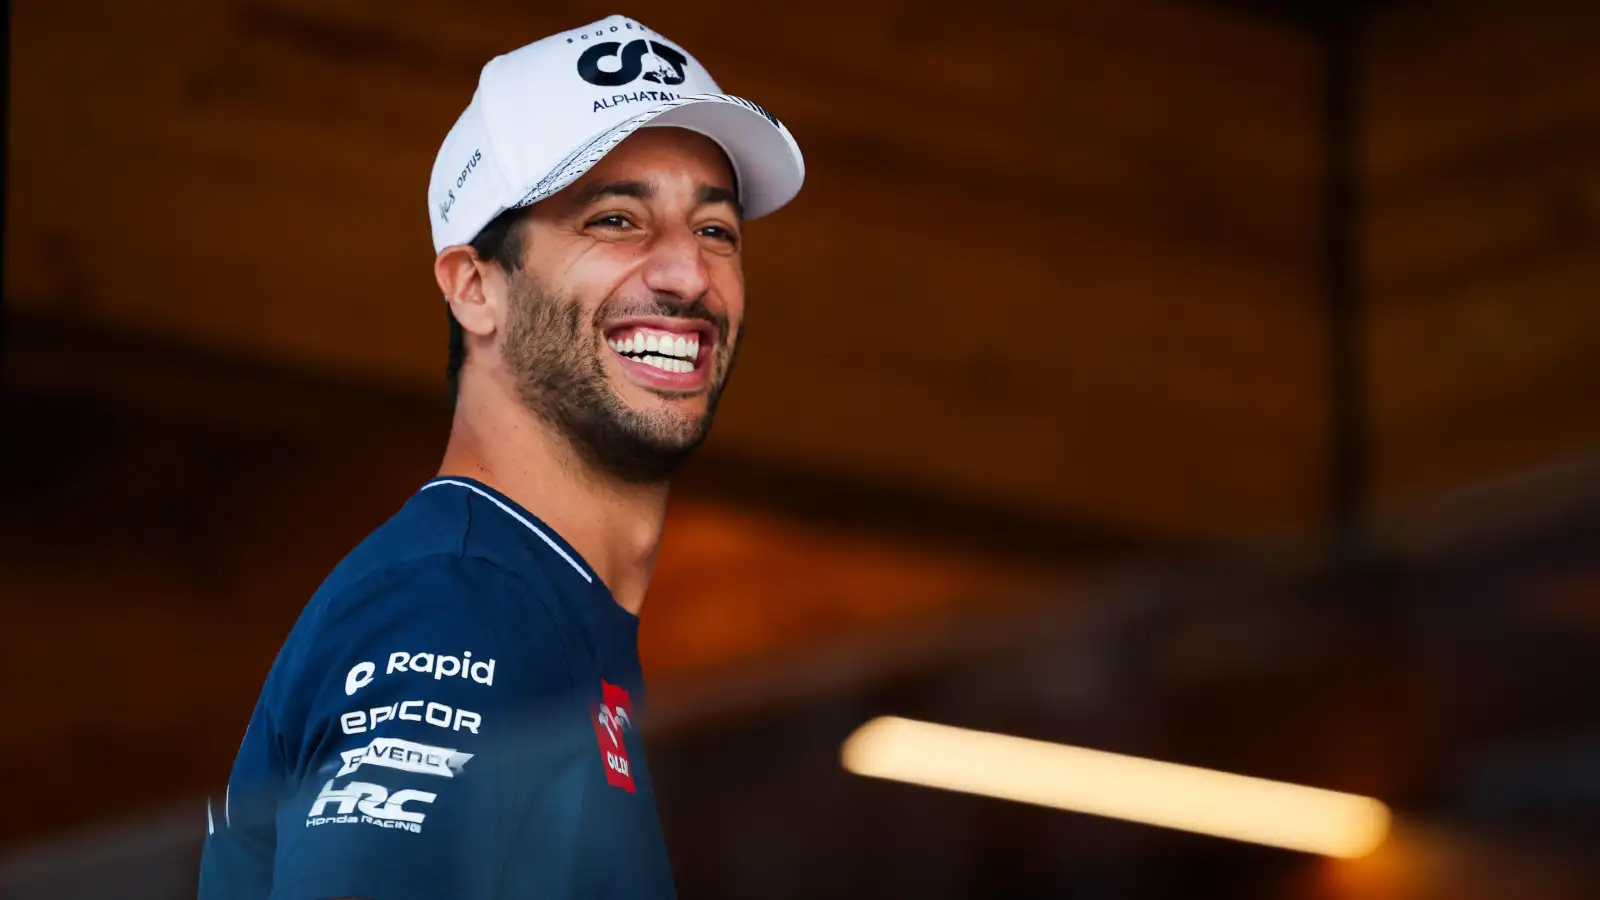 Daniel Ricciardo gears up for the second half of the F1 season at the Dutch Grand Prix.